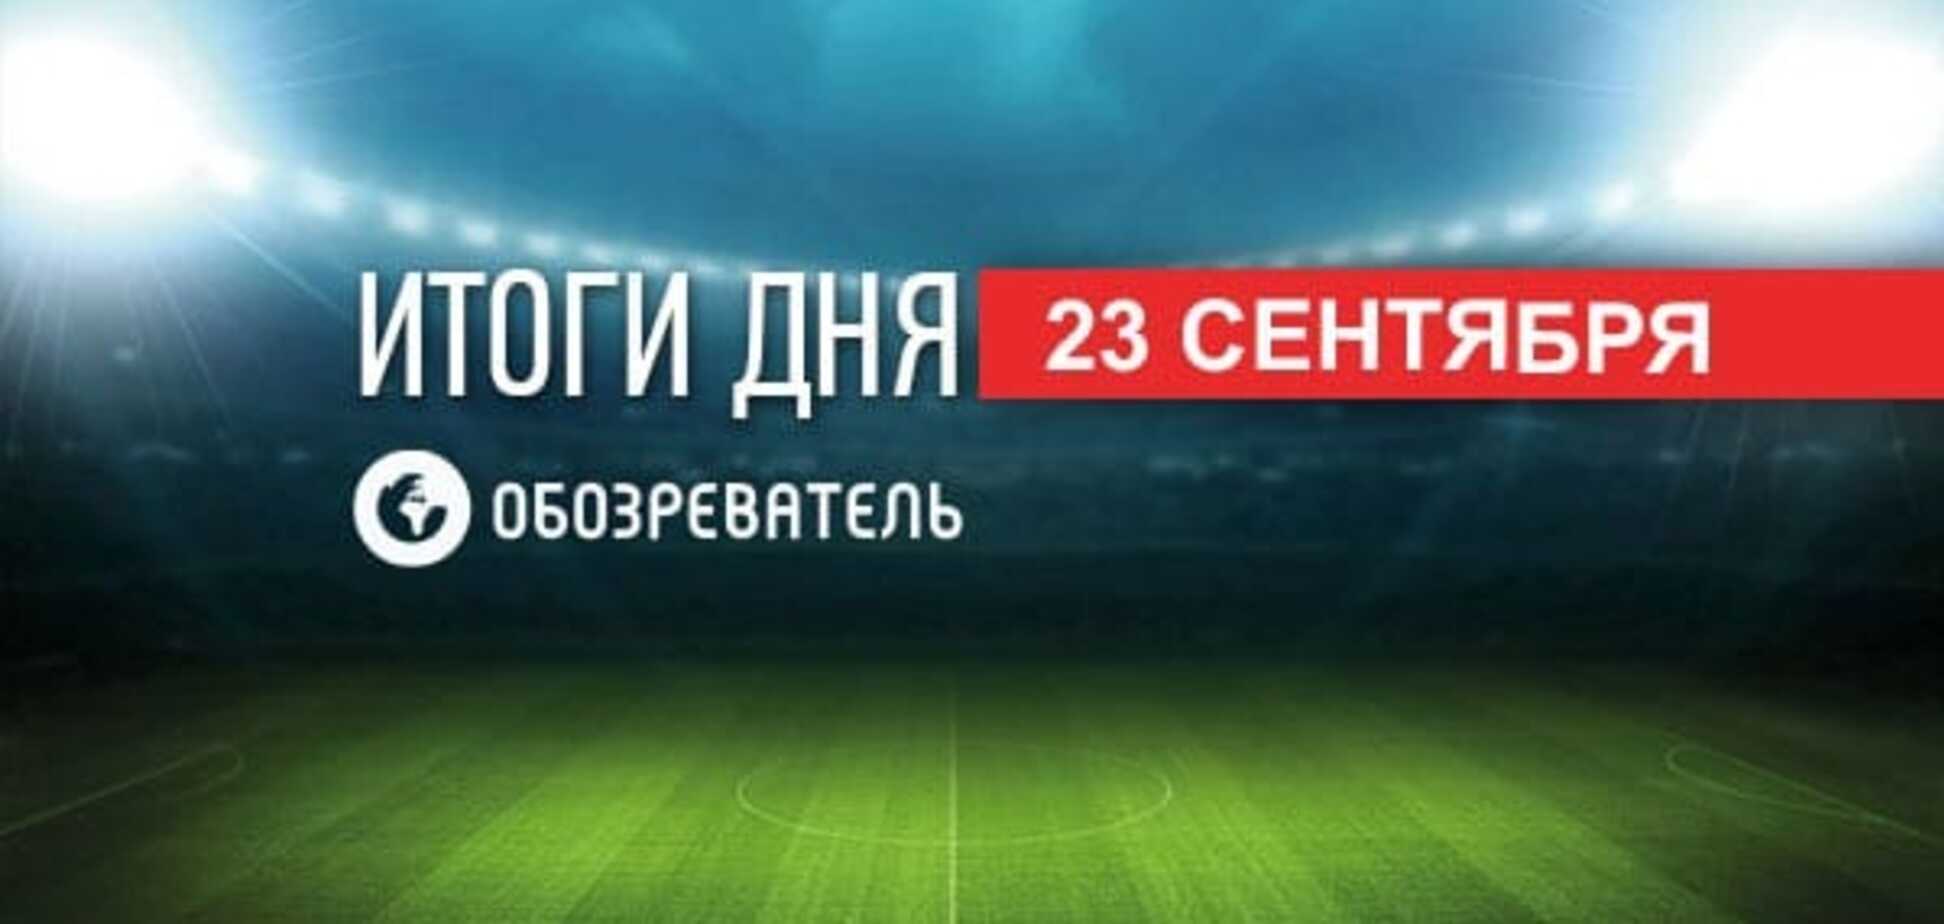 'Динамо' и 'Шахтер' узнали соперников в Кубке Украины: спортивные итоги 23 сентября